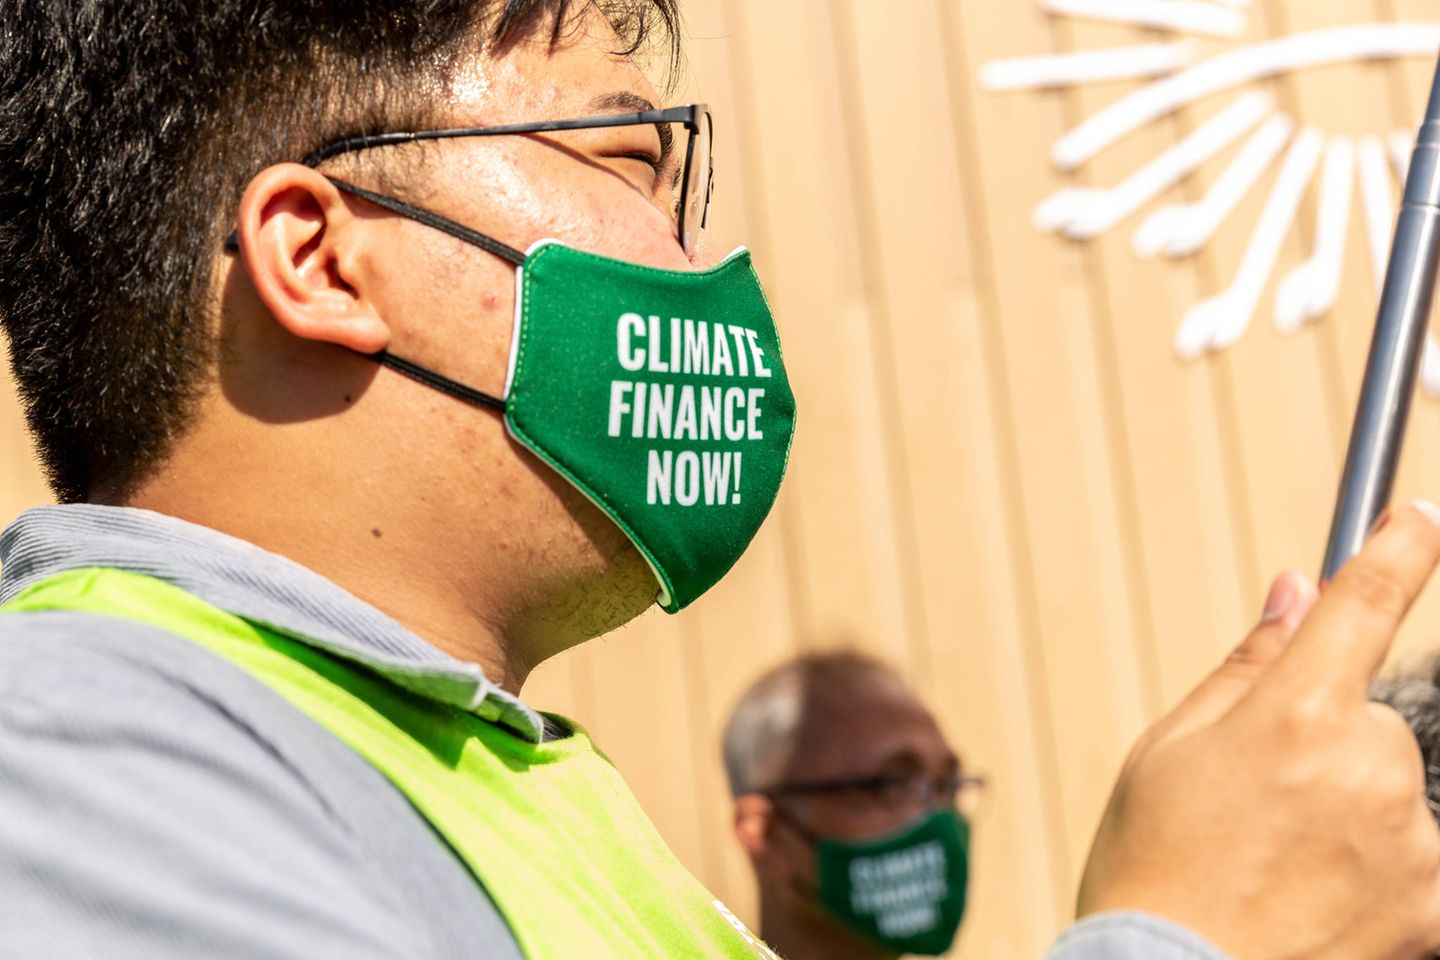 Demonstranten tragen Masken mit der Aufschrift "Climate Finance Now"